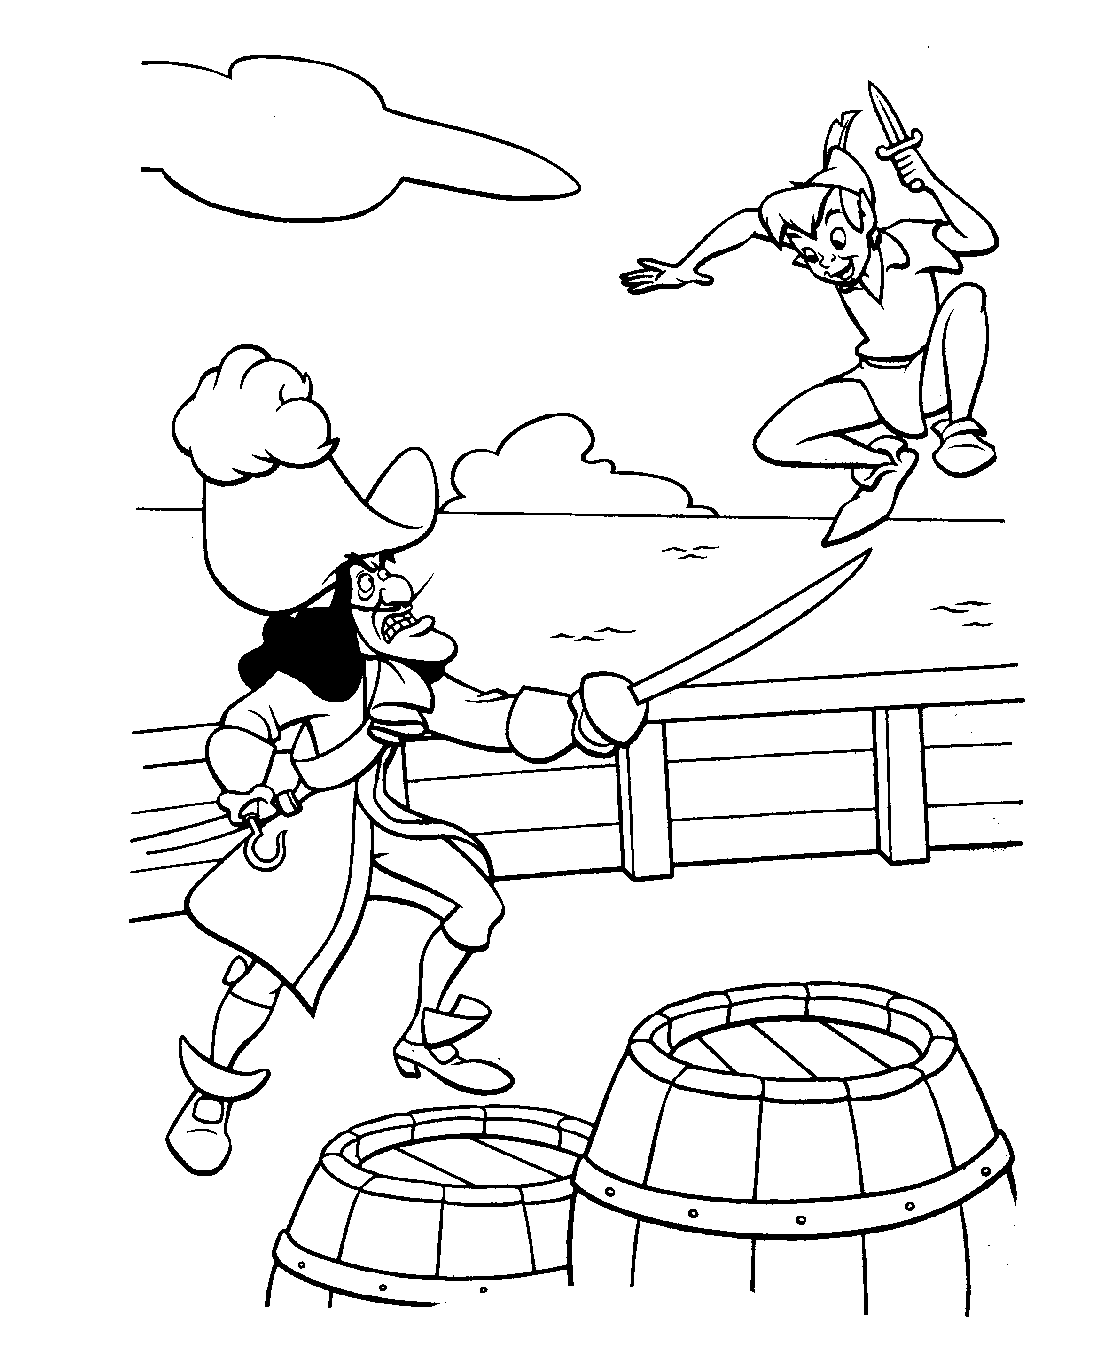 Coloriage du capitaine crochet se battant avec Peter Pan !